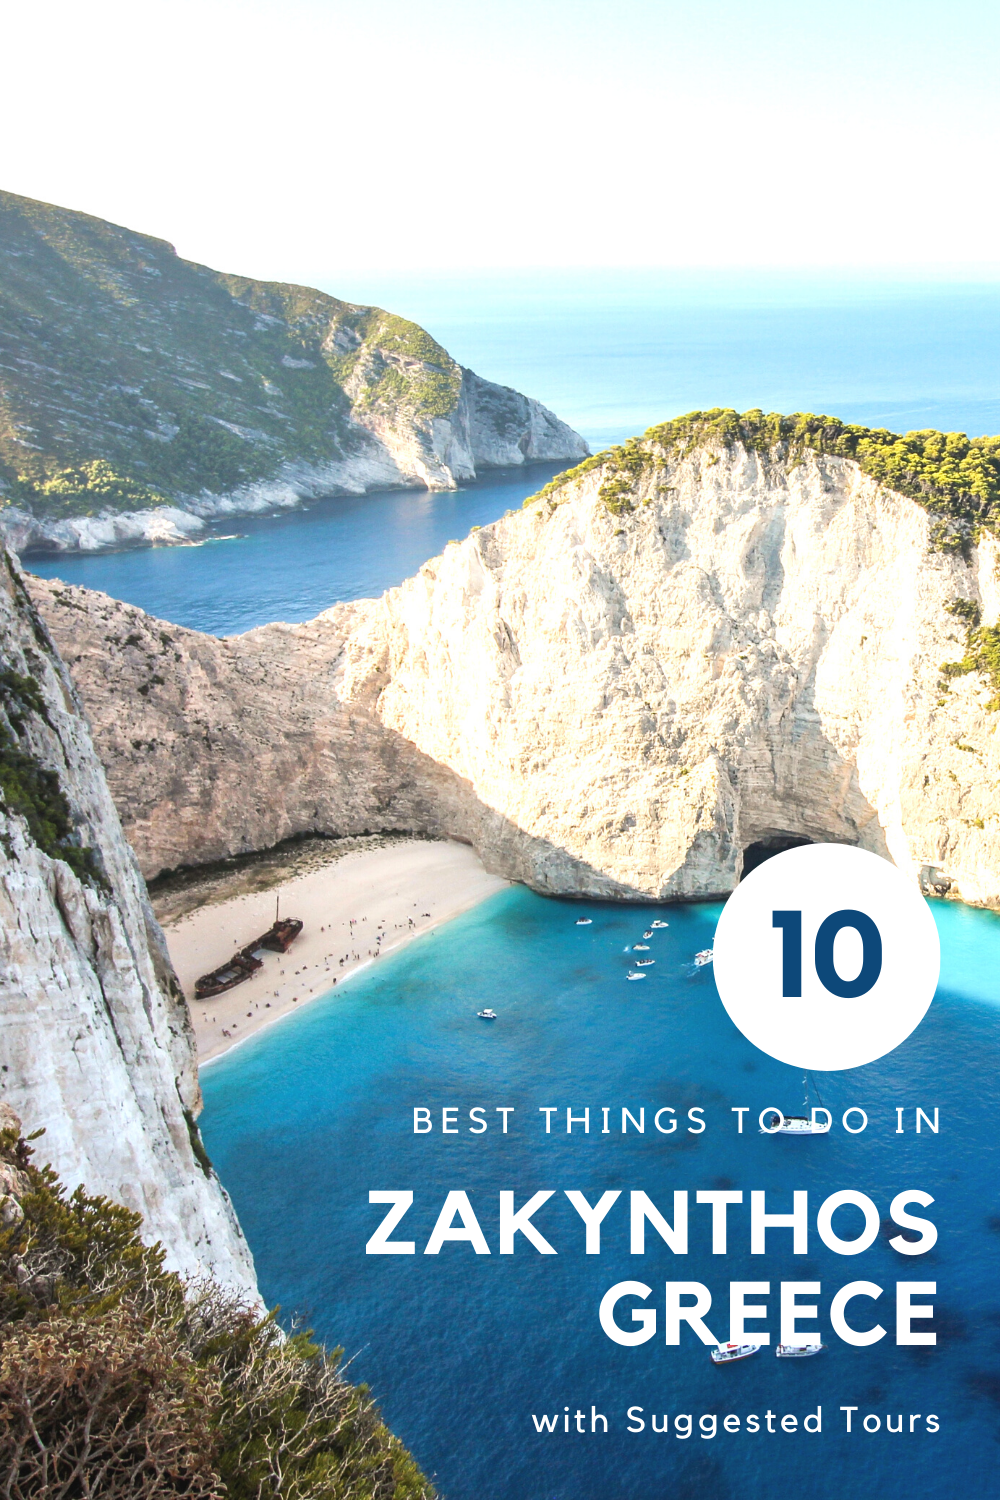 10 Best Things to do in Zakynthos, Greece